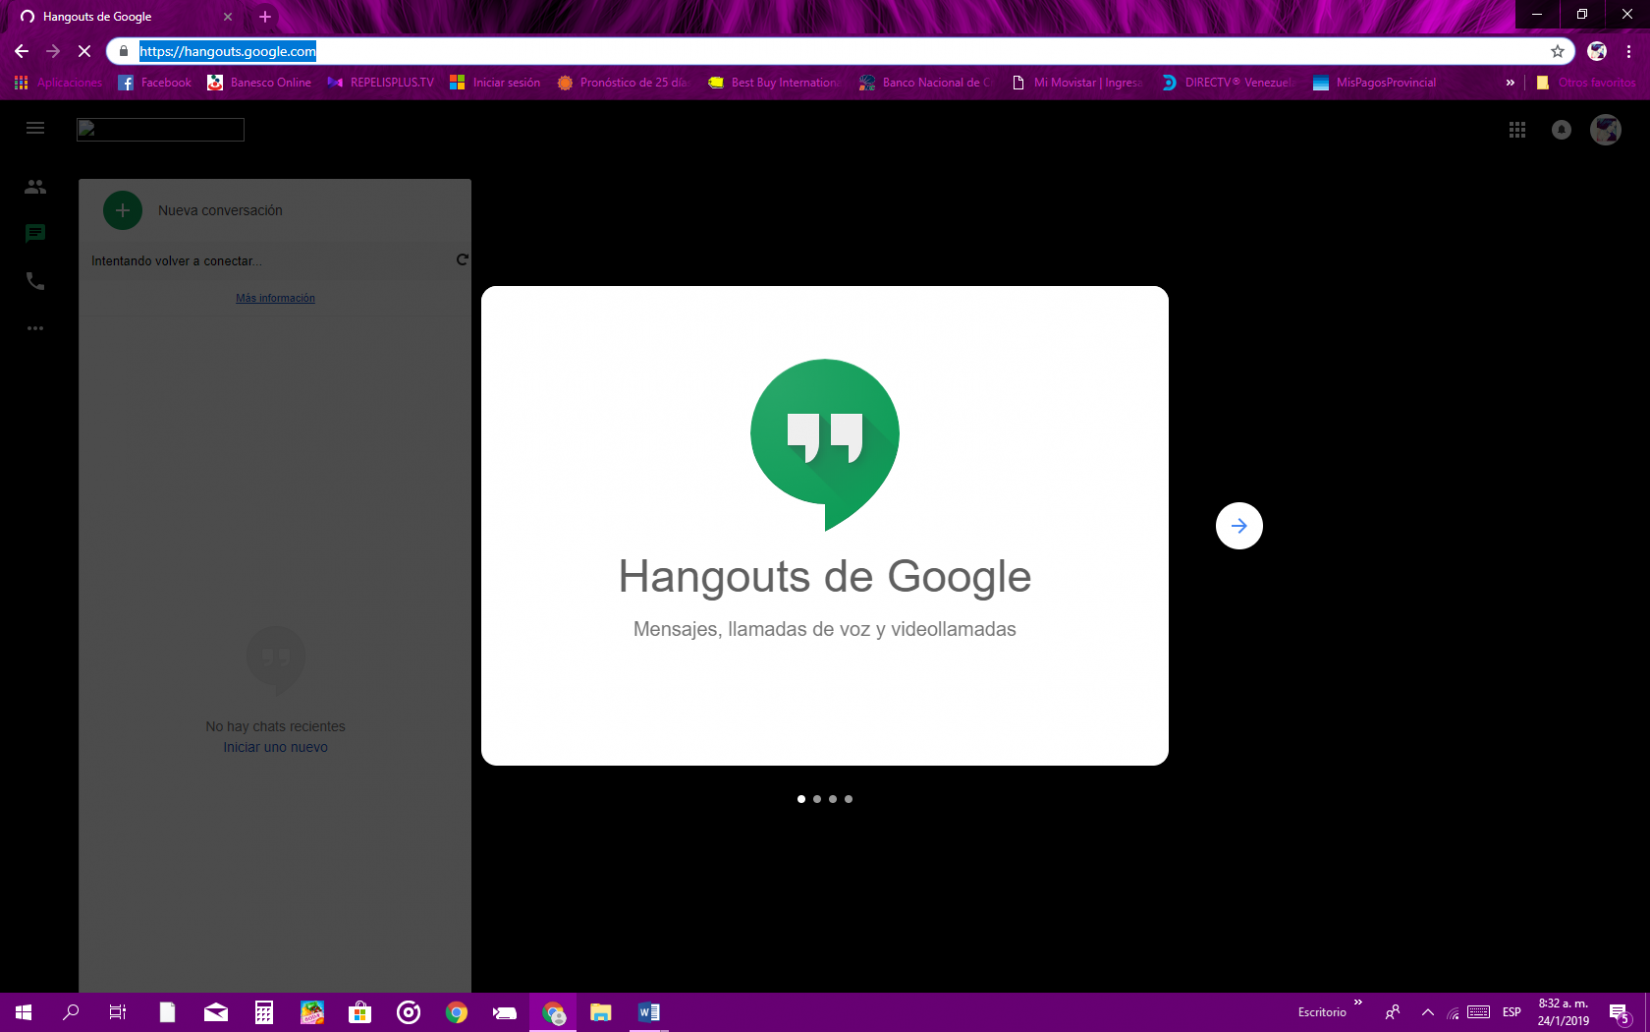 Prueba hierro Censo nacional Cómo ver contactos Hangouts de Google - Solvetic